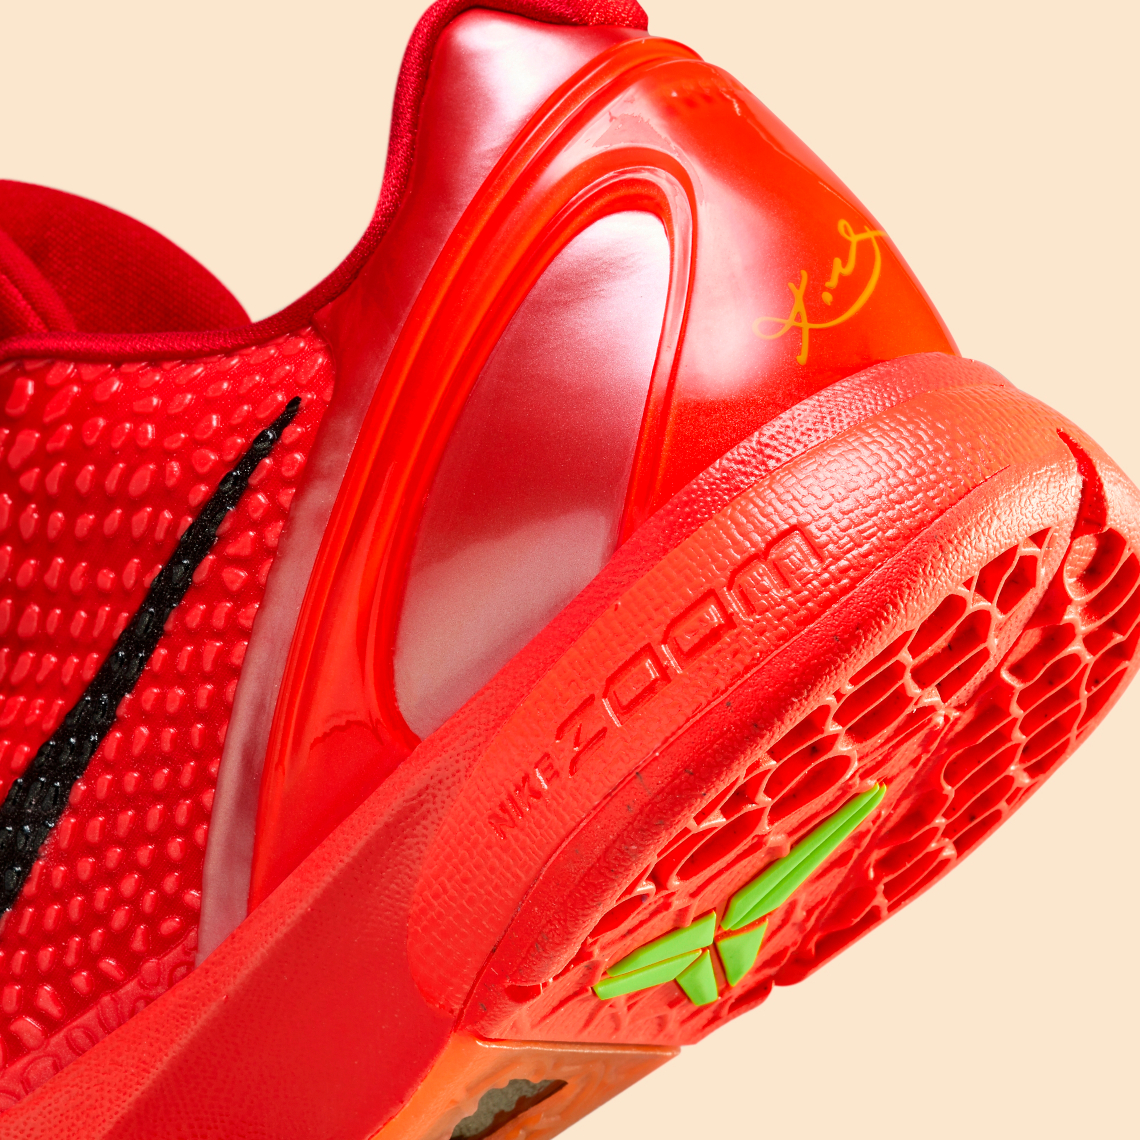 Nike Kobe sneakers